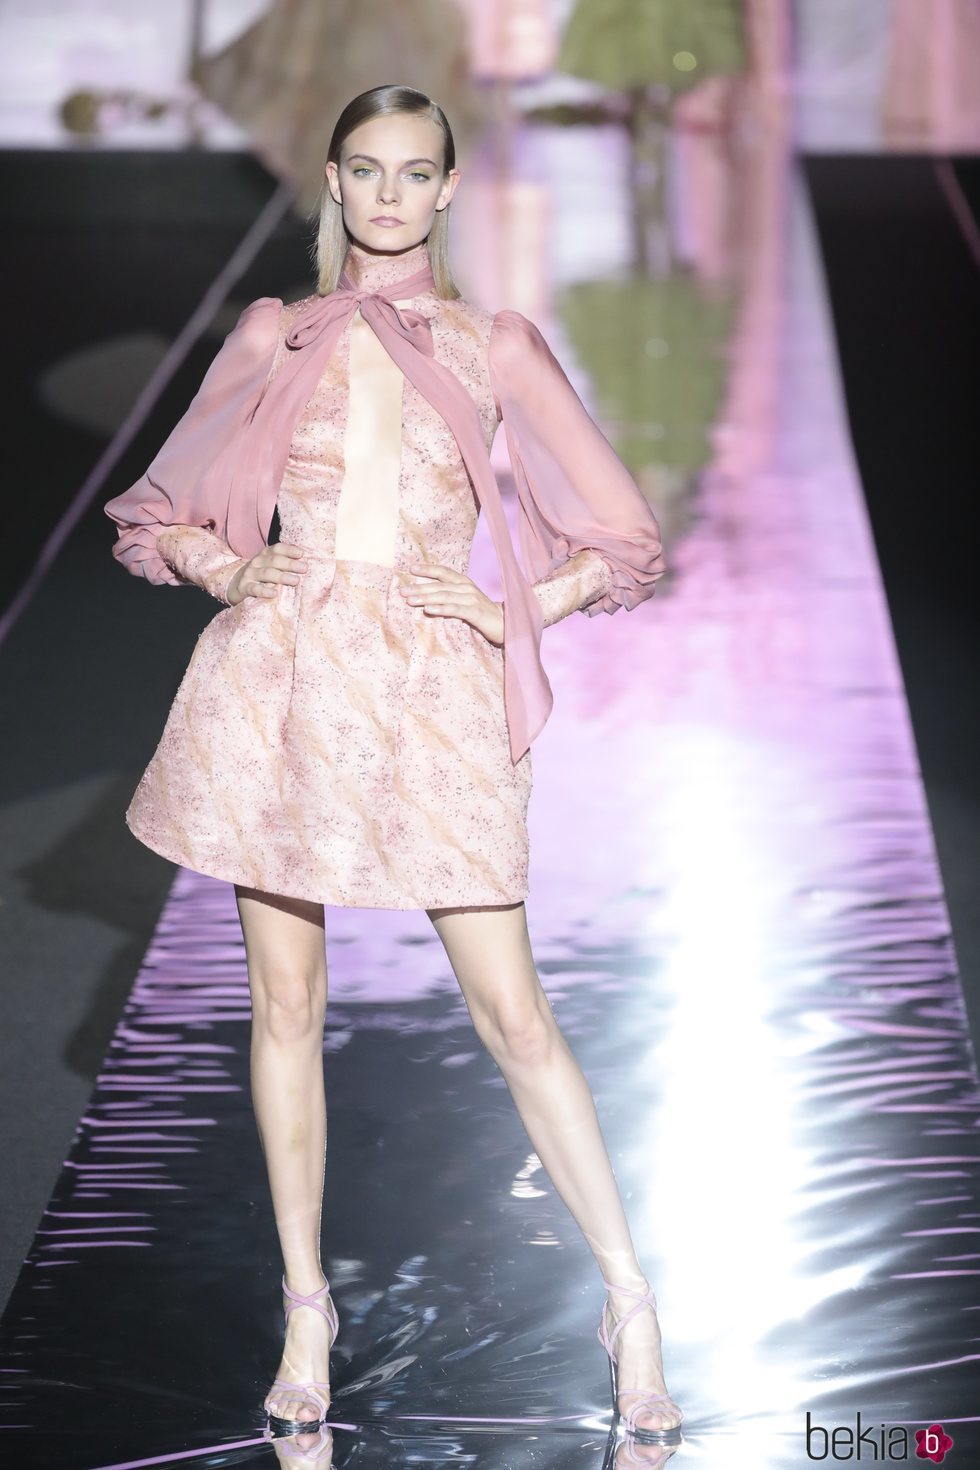 Vestido corto rosa de Hannibal Laguna primavera/verano 2019 en la Madrid Fashion Week